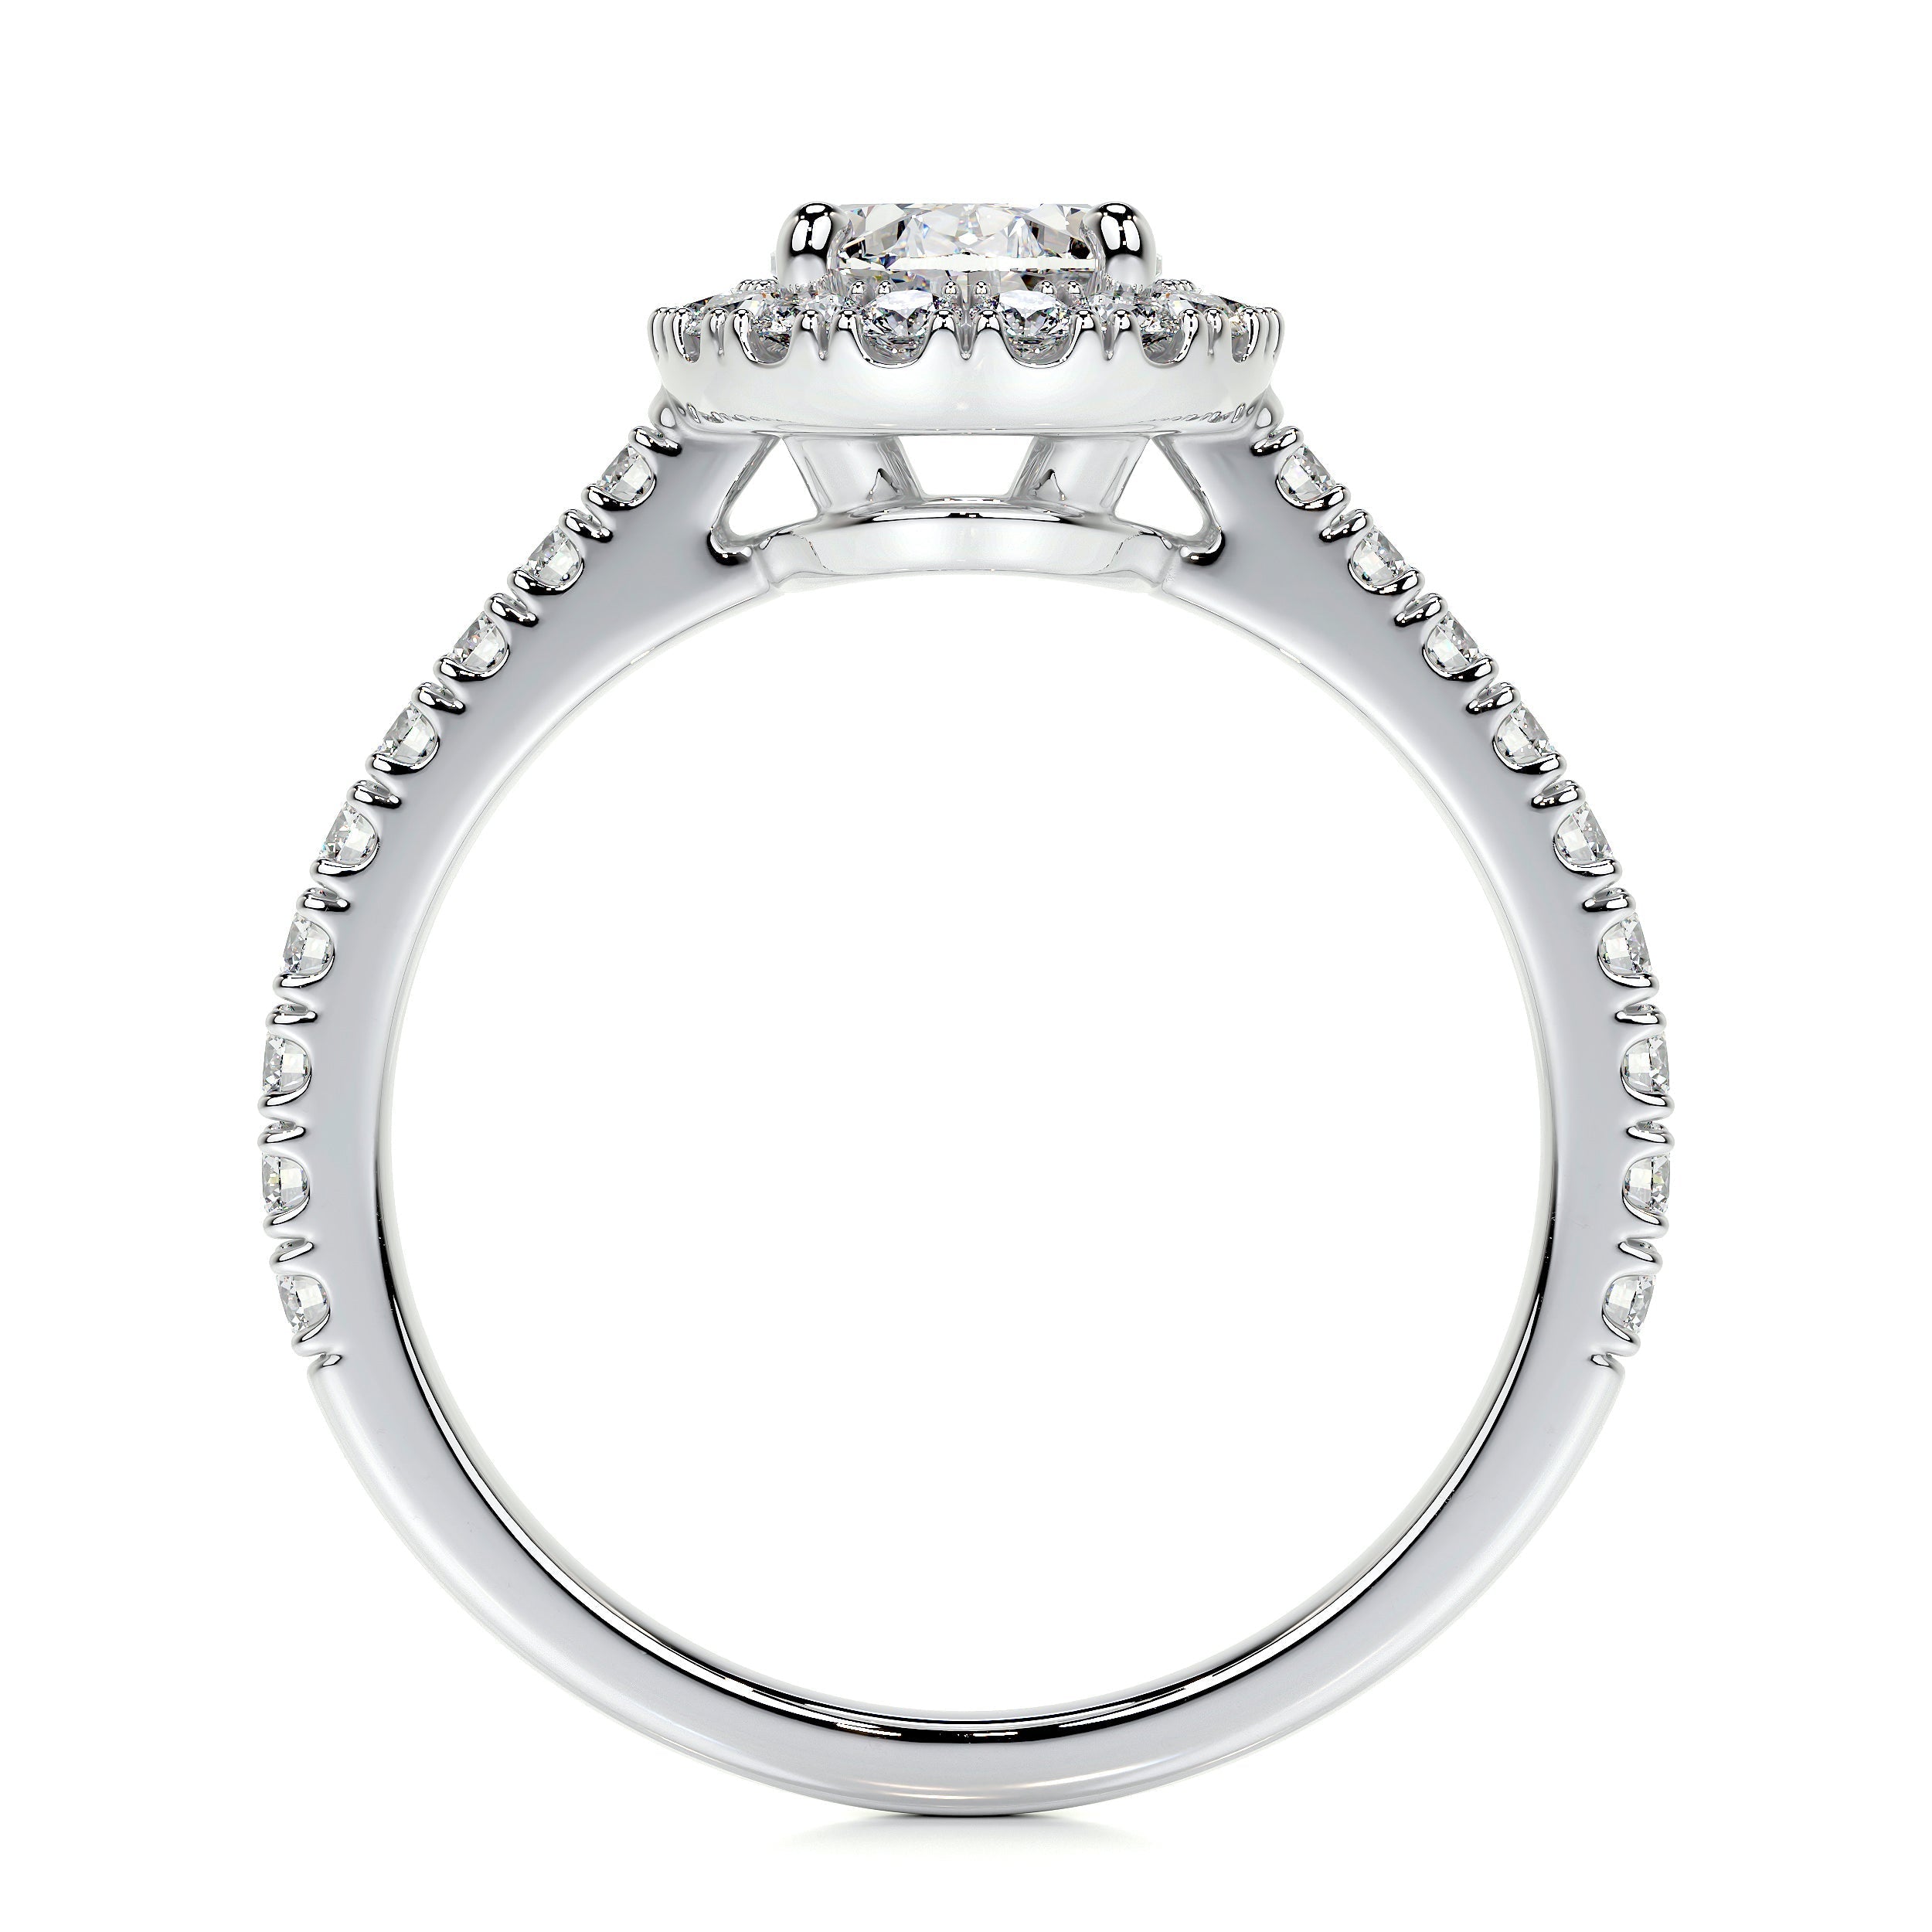 Maria Lab Grown Diamond Ring   (2 Carat) -18K White Gold